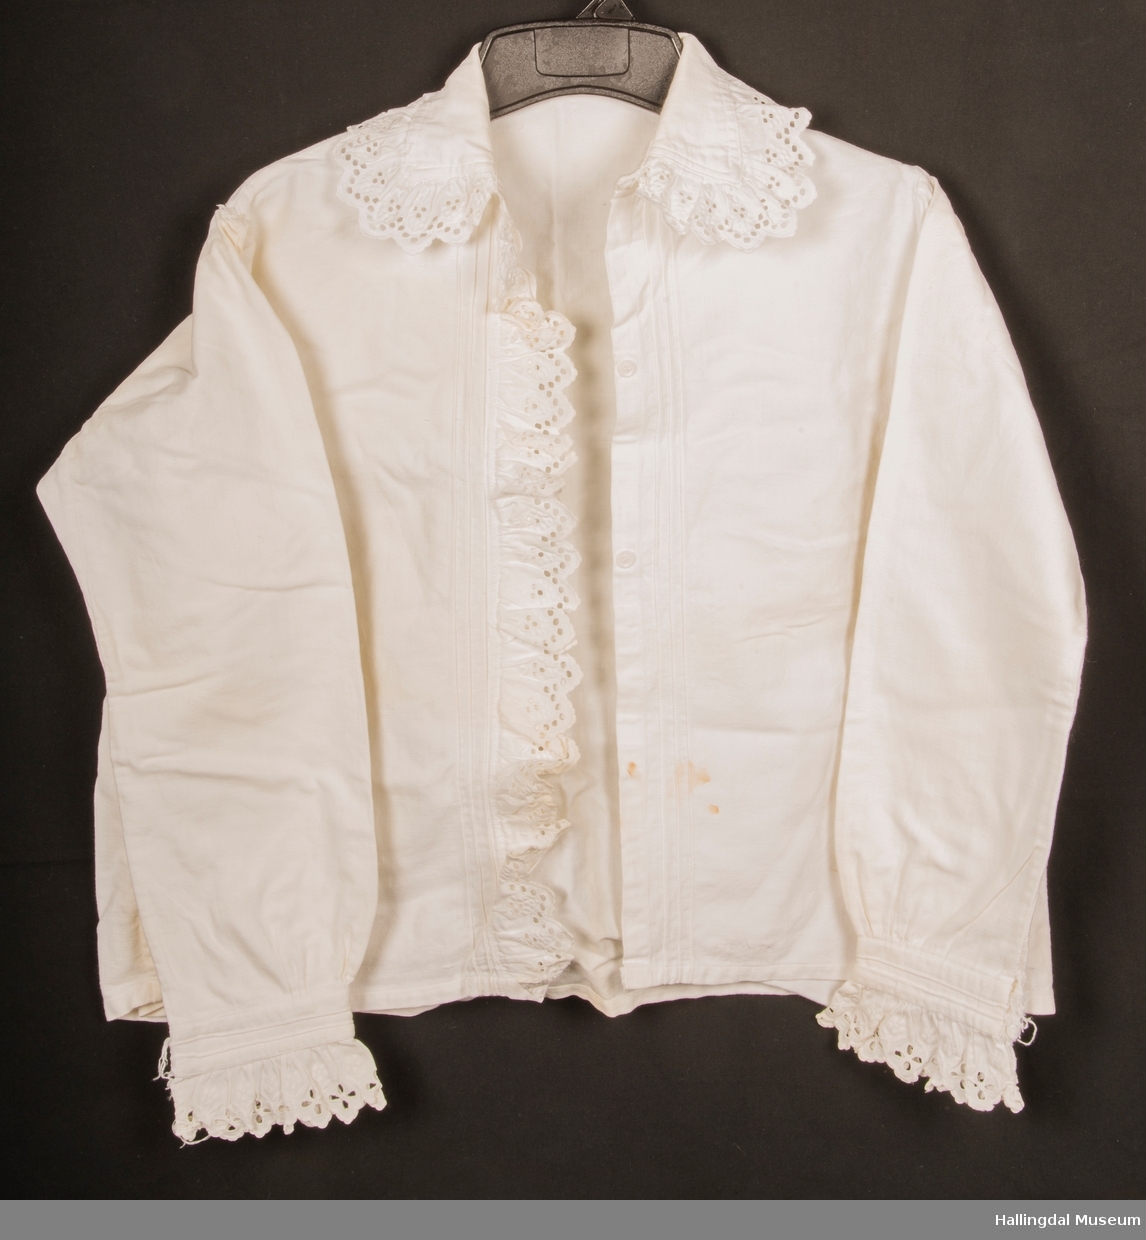 Hjemmelaget bluse sydd av bomullstøy med blonder rundt kragen, håndledd og langs åpningen. Skjorta er lukket med 3 plastknapper som er skjult bak blonden når skjorta er lukket.